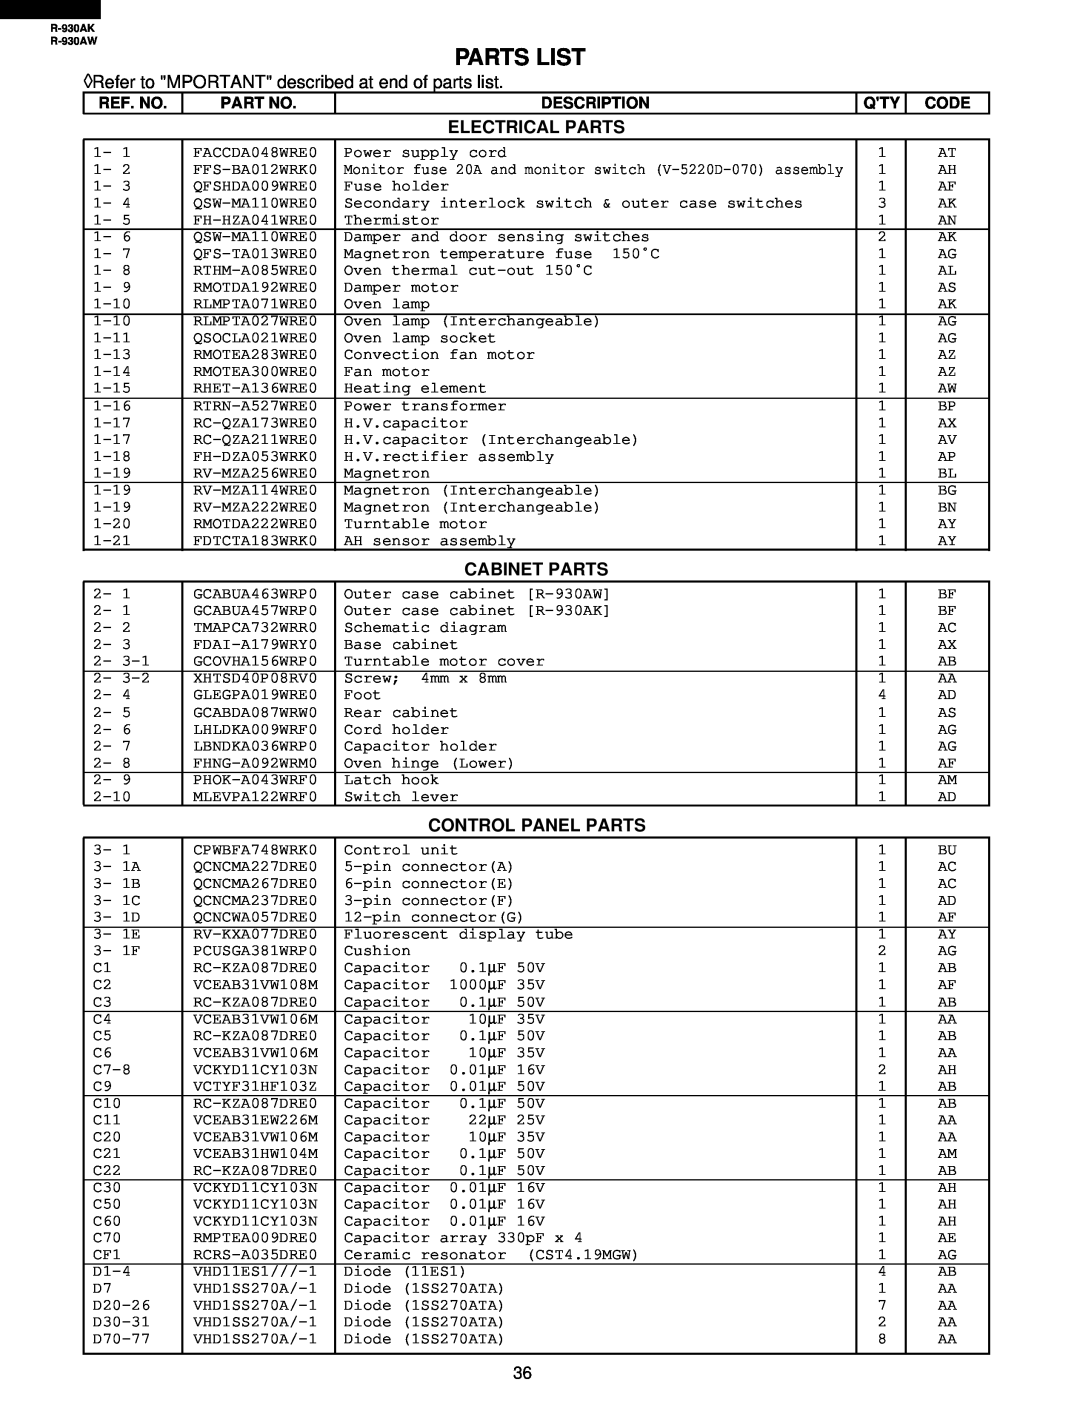 Sharp R-930AW service manual Parts List, Electrical Parts, Cabinet Parts, Control Panel Parts, Ref. No, Description, Code 